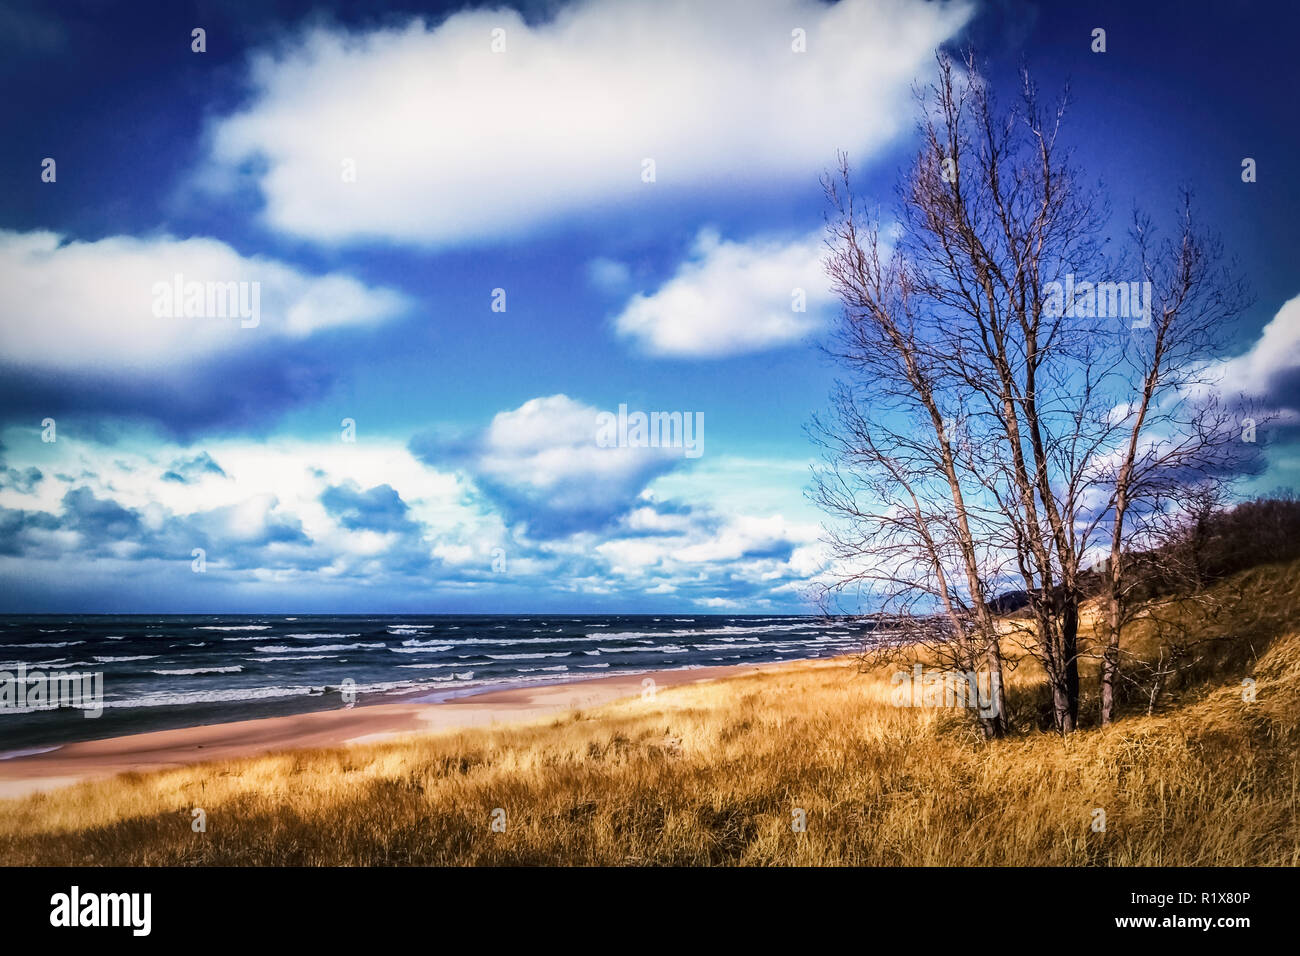 Automne au lac Michigan. Saugatuck Dunes State Park Beach. Arrière-plan avec copie espace Lakeshore. Banque D'Images